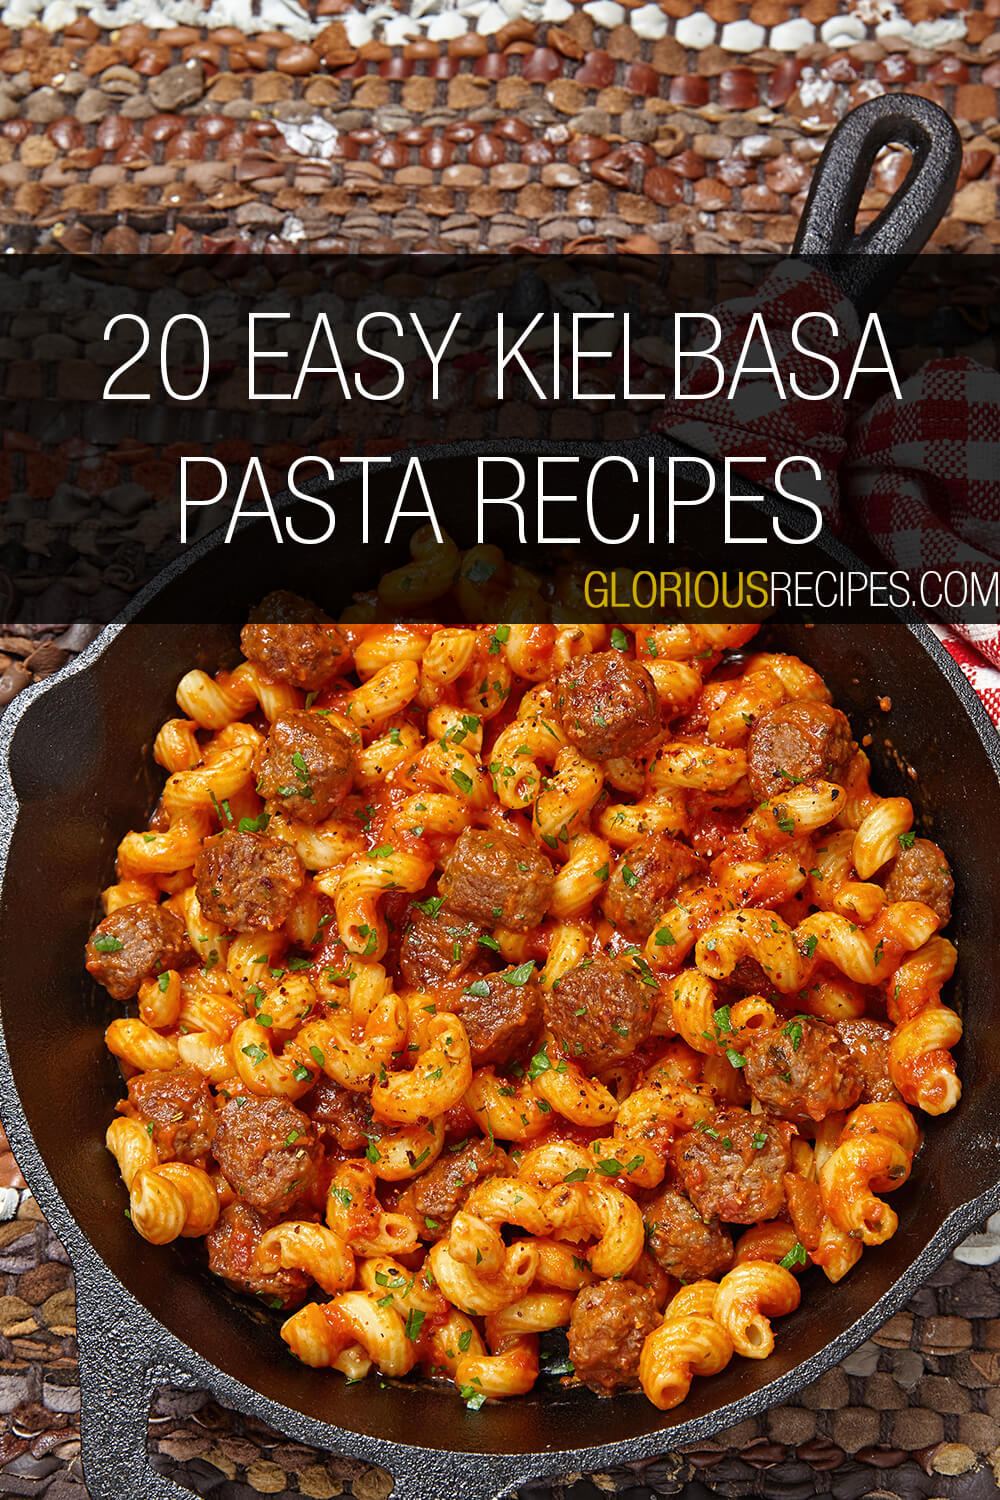 20 Quick And Easy Kielbasa Pasta Recipes